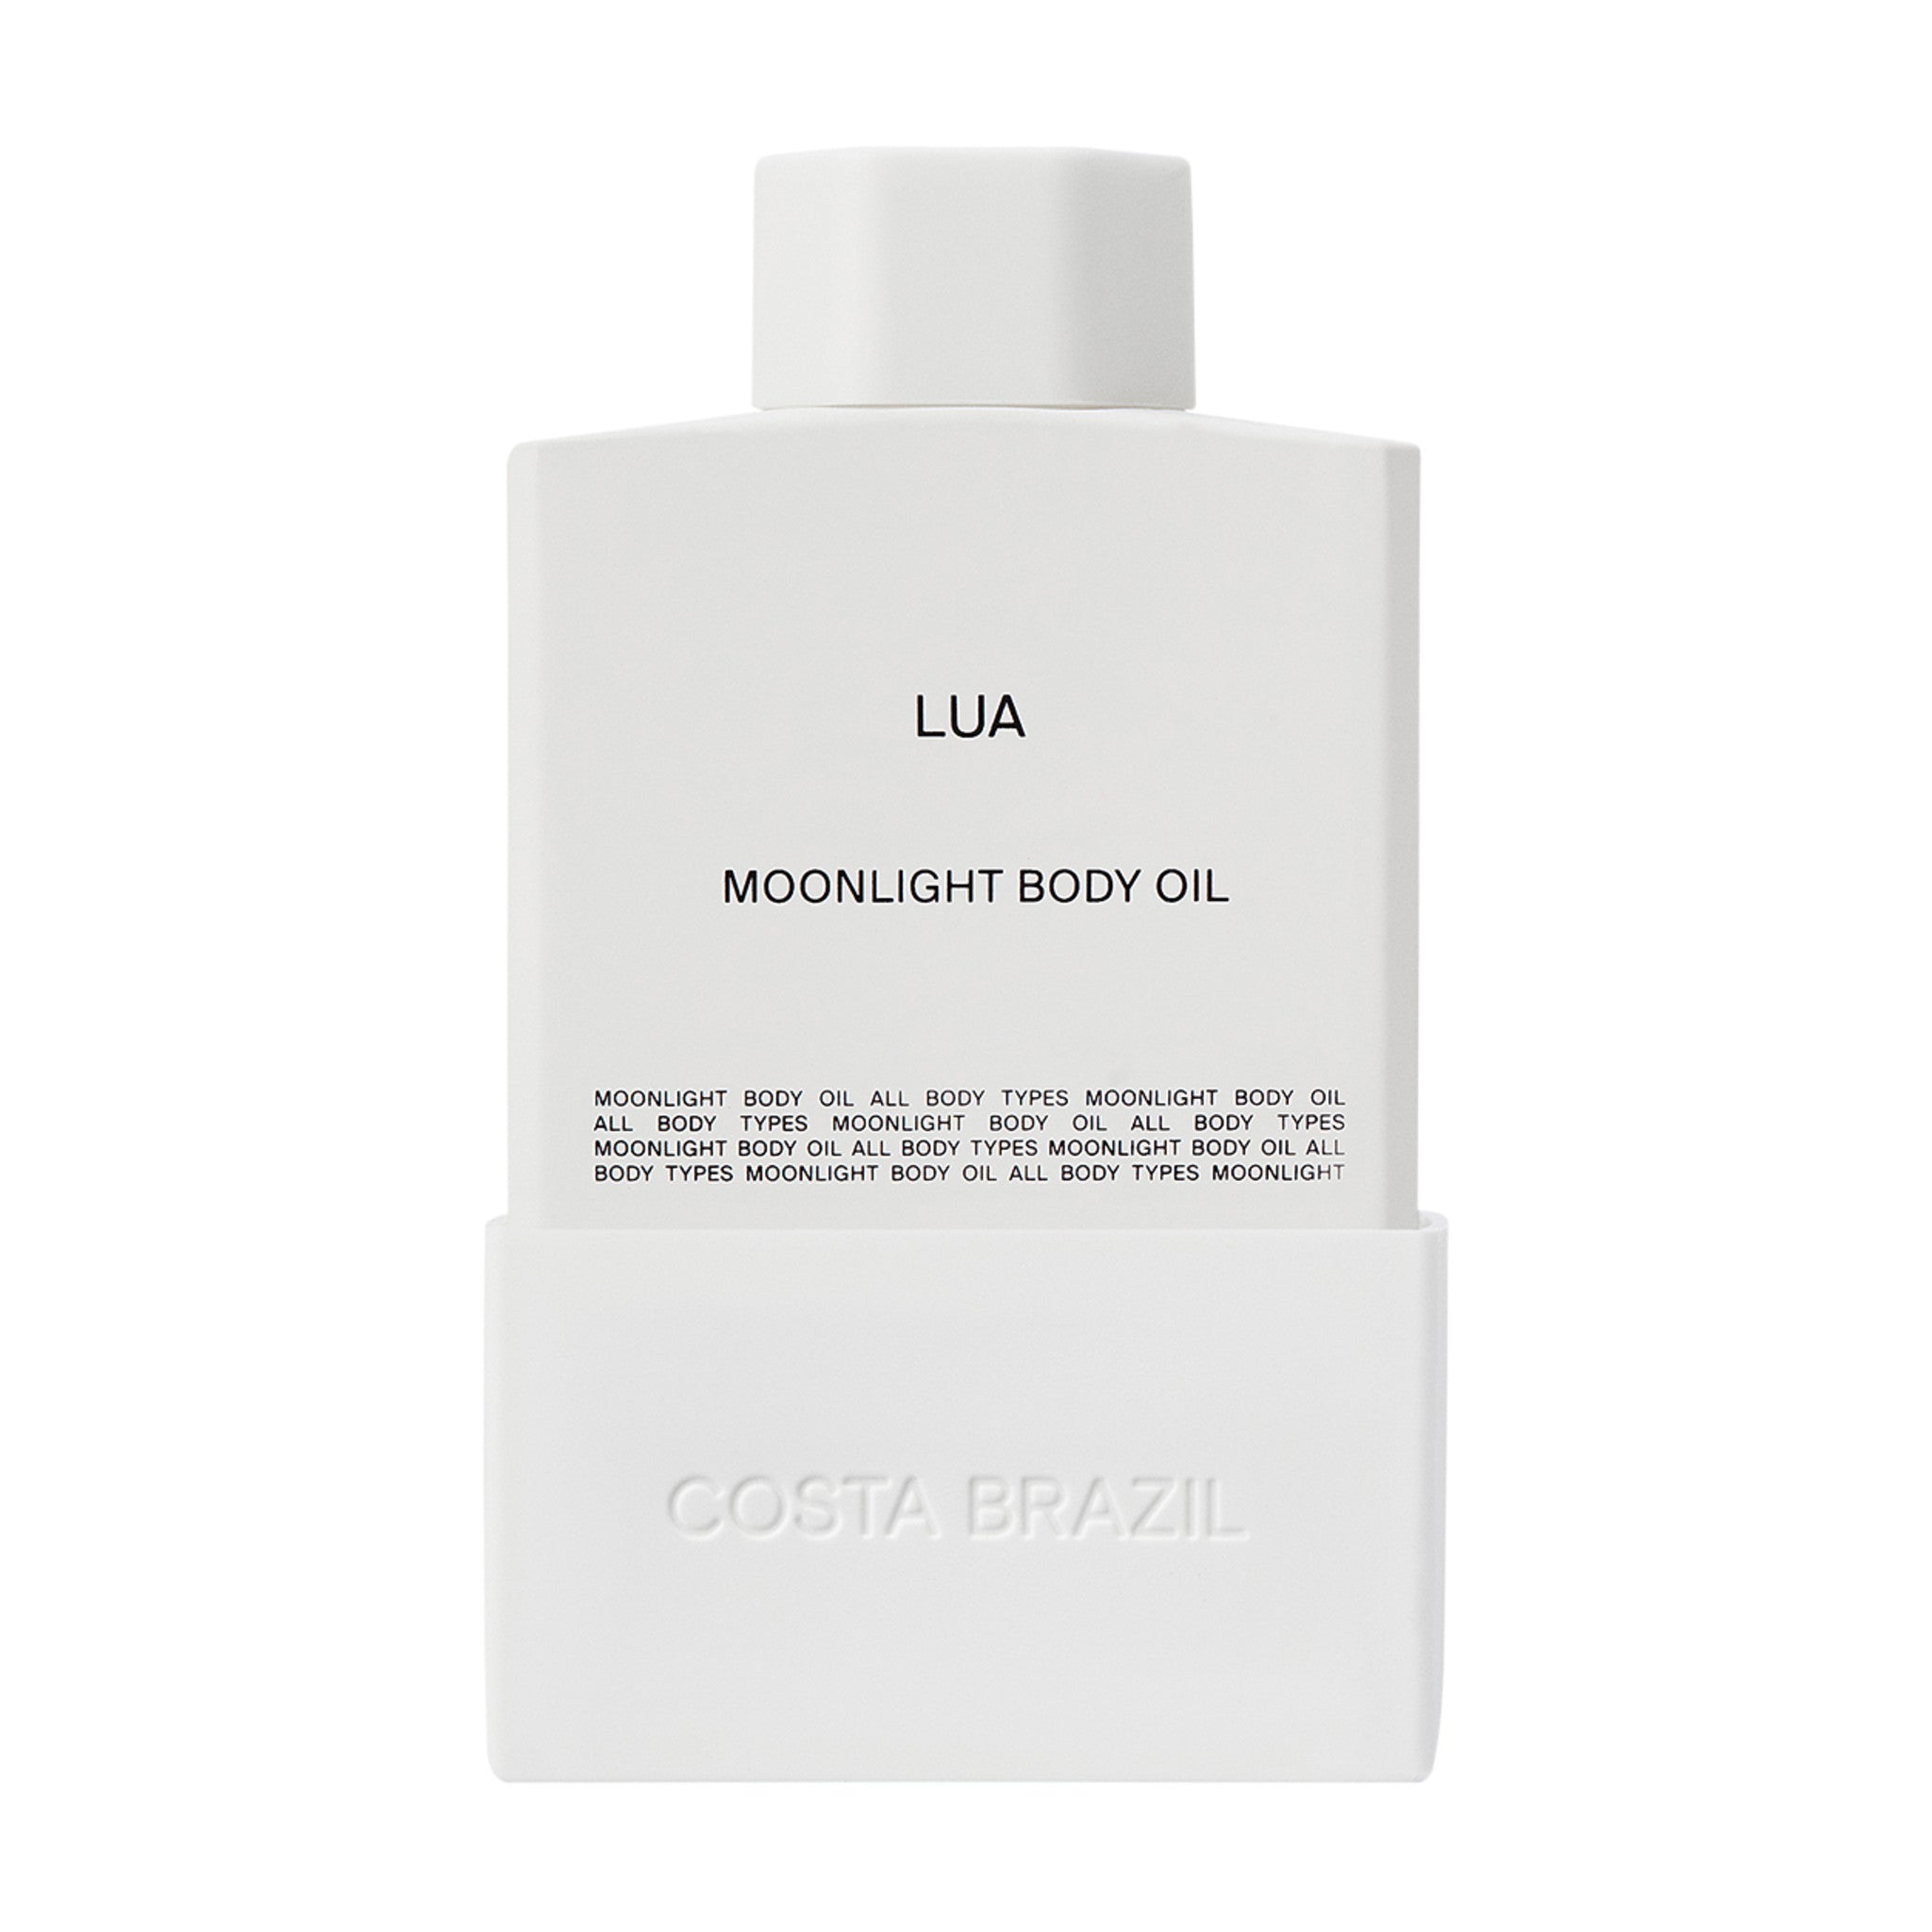 Costa Brazil Lua Moonlight Body Oil Size variant: 100 ml main image.